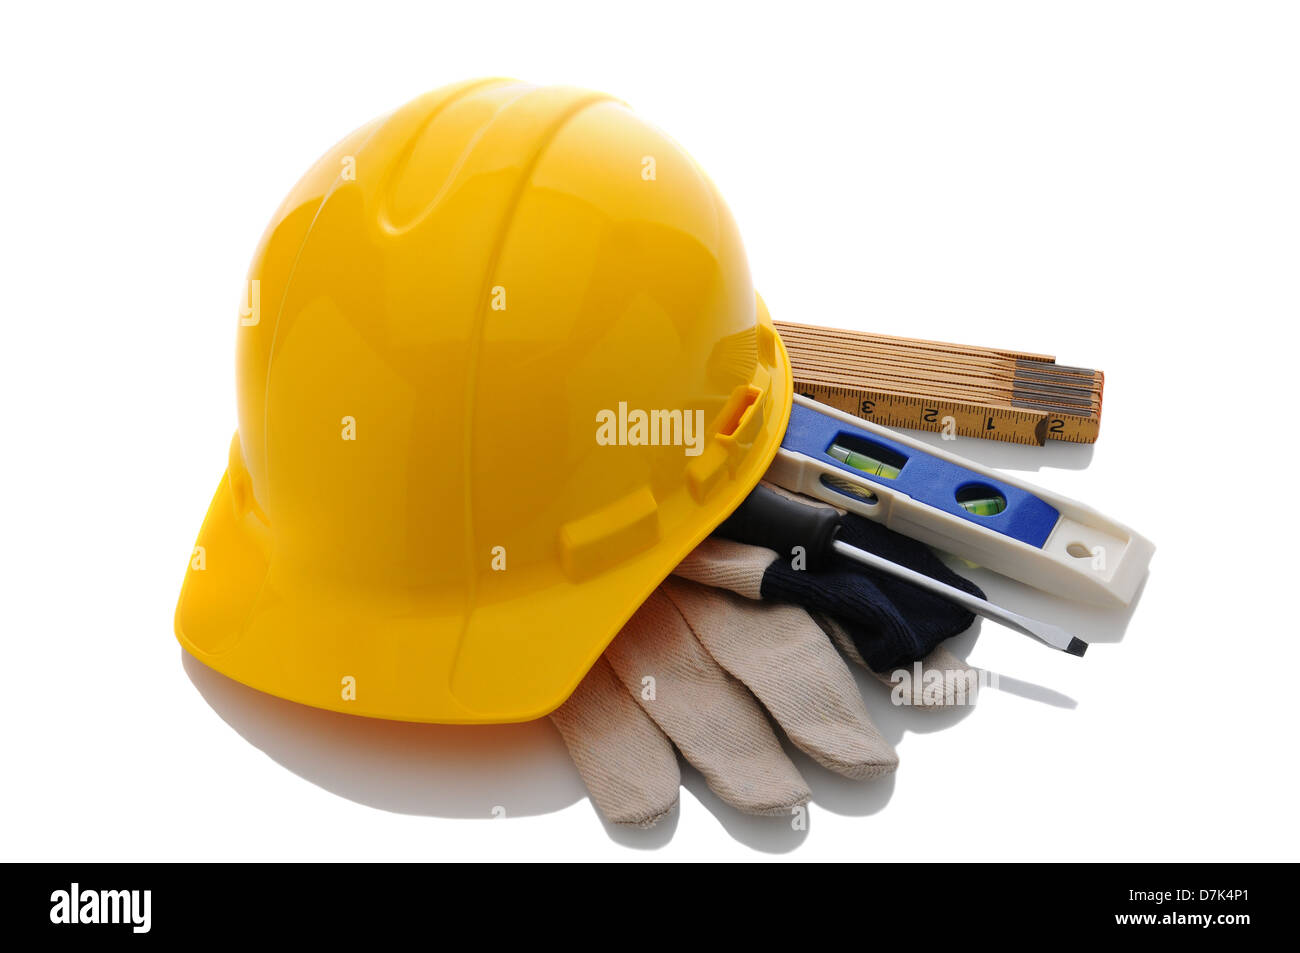 Un entrepreneurs jaune casque gants de travail et des outils. Format horizontal blanc avec plus de réflexion. Banque D'Images